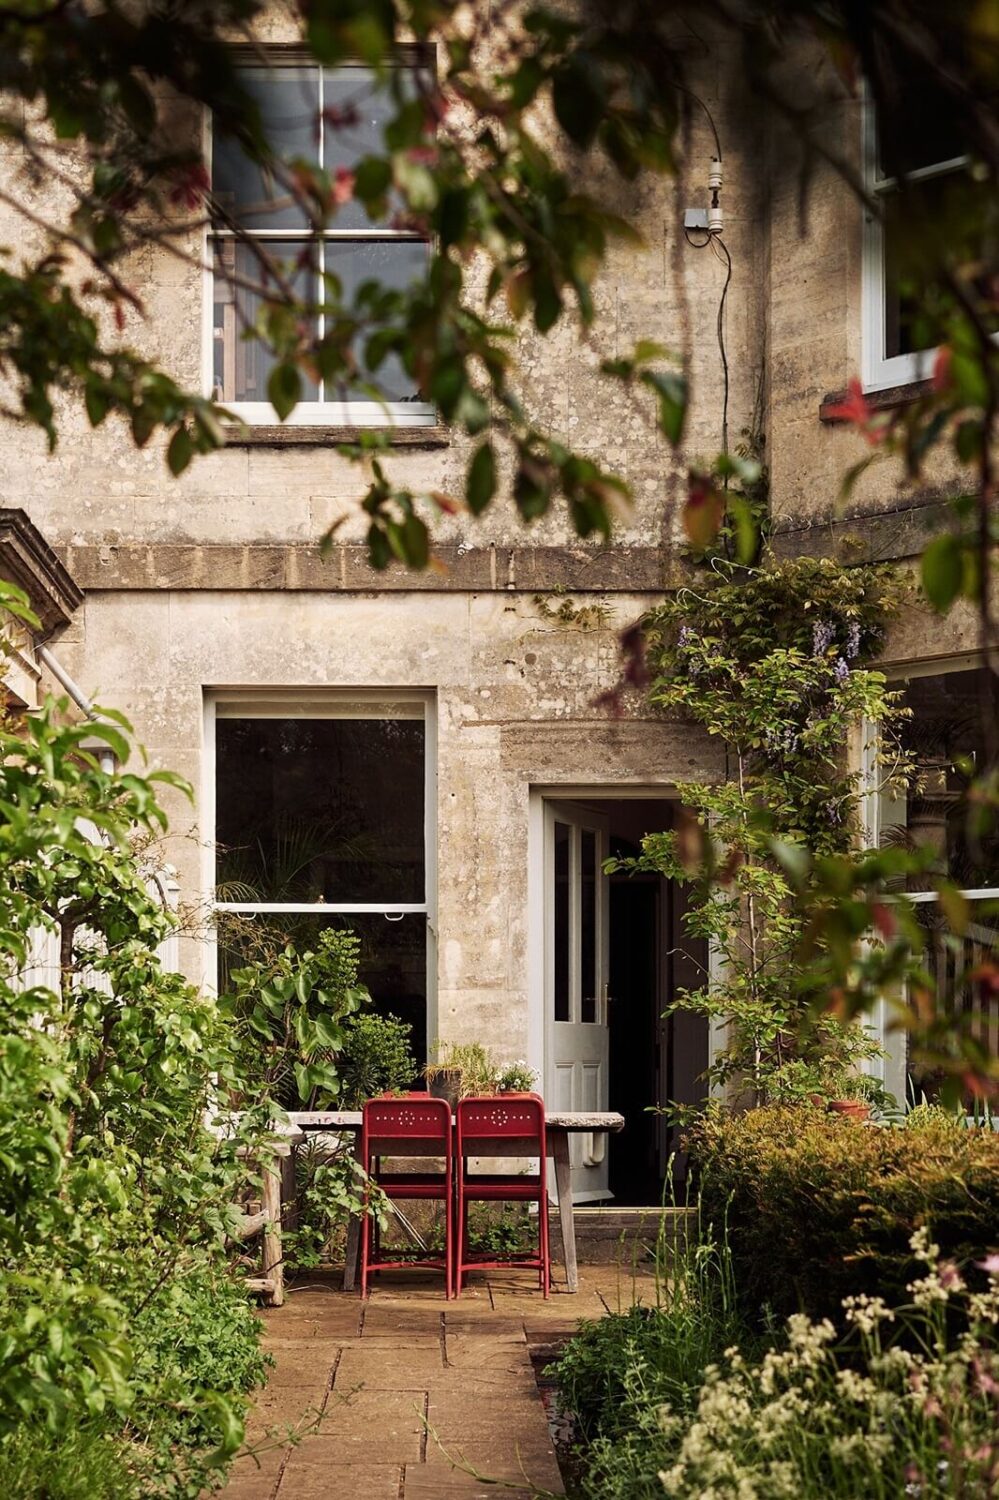 garden-terrace-historic-house-england-nordroom